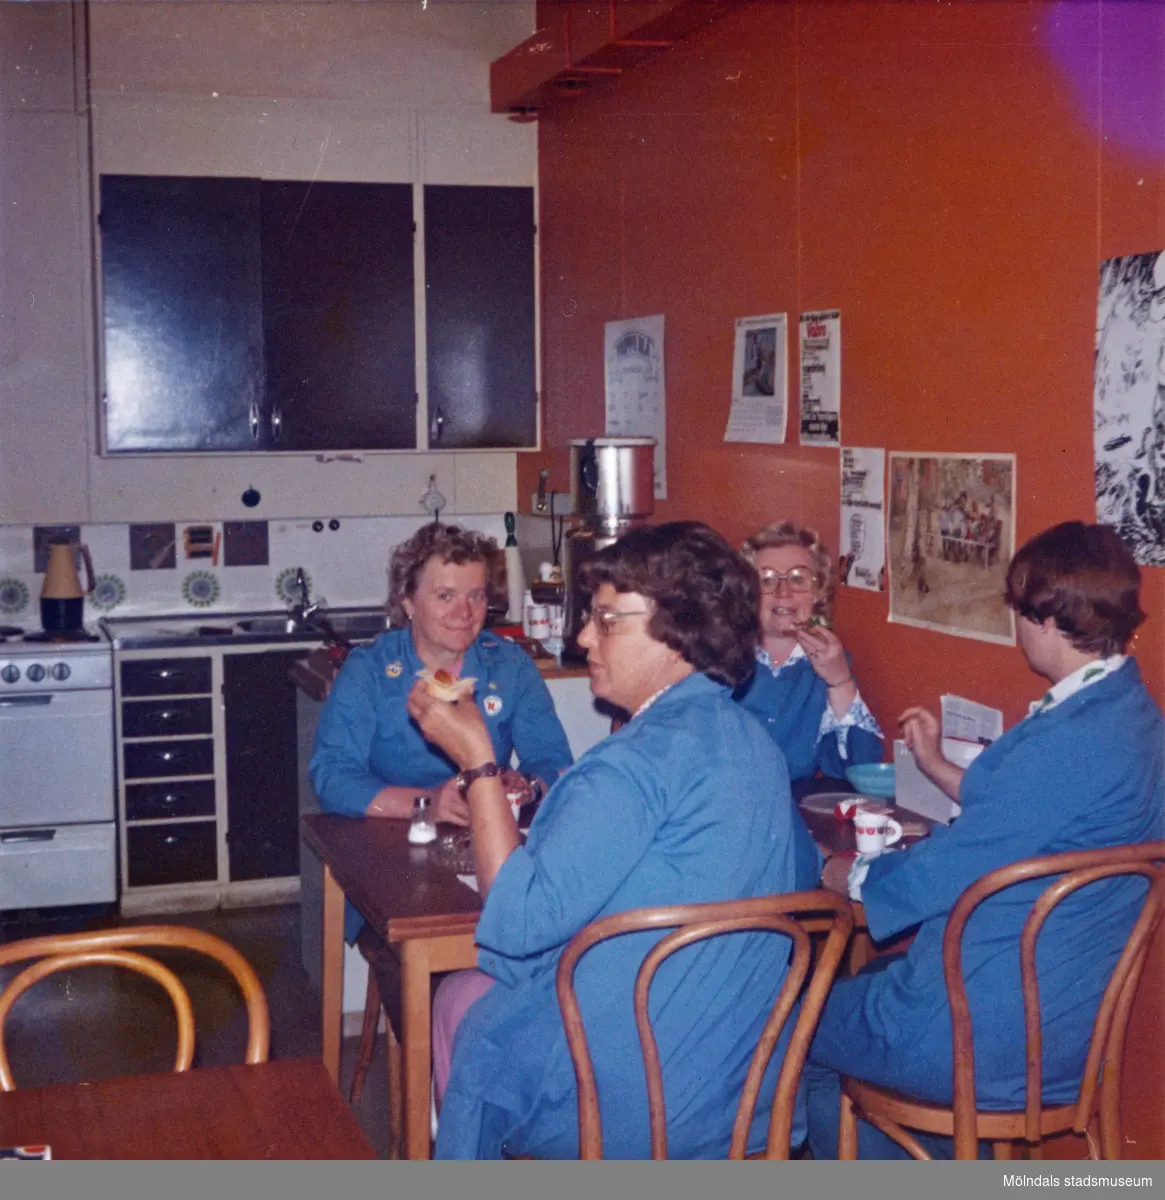 Ett kök/fikarum, Domus vid Nya torget senast 1976. Fyra kvinnor, iklädda blå rockar, sitter vid ett bord och fikar. På den röda/orangefärgade väggen bredvid kvinnorna sitter olika bilder uppsatta. I bakgrunden ses kökets brunmålade luckor och lådor.